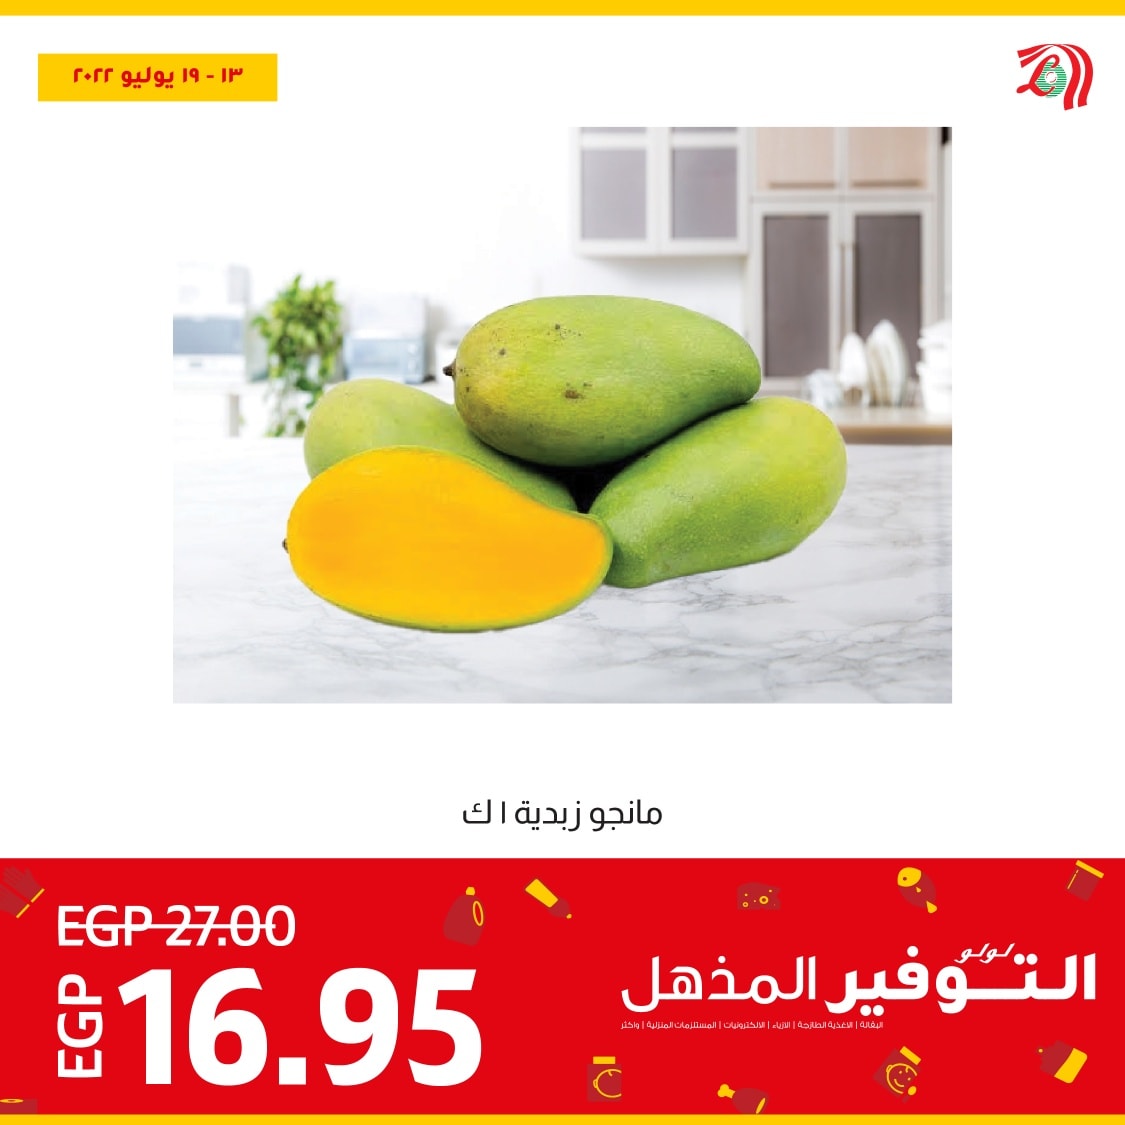 اشتري افضل الخضروات والفاكهة الطازجة النهاردة وبأقل سعر في عروض لولو هايبر ماركت مصر ولغاية يوم 19 يوليو 2022 2